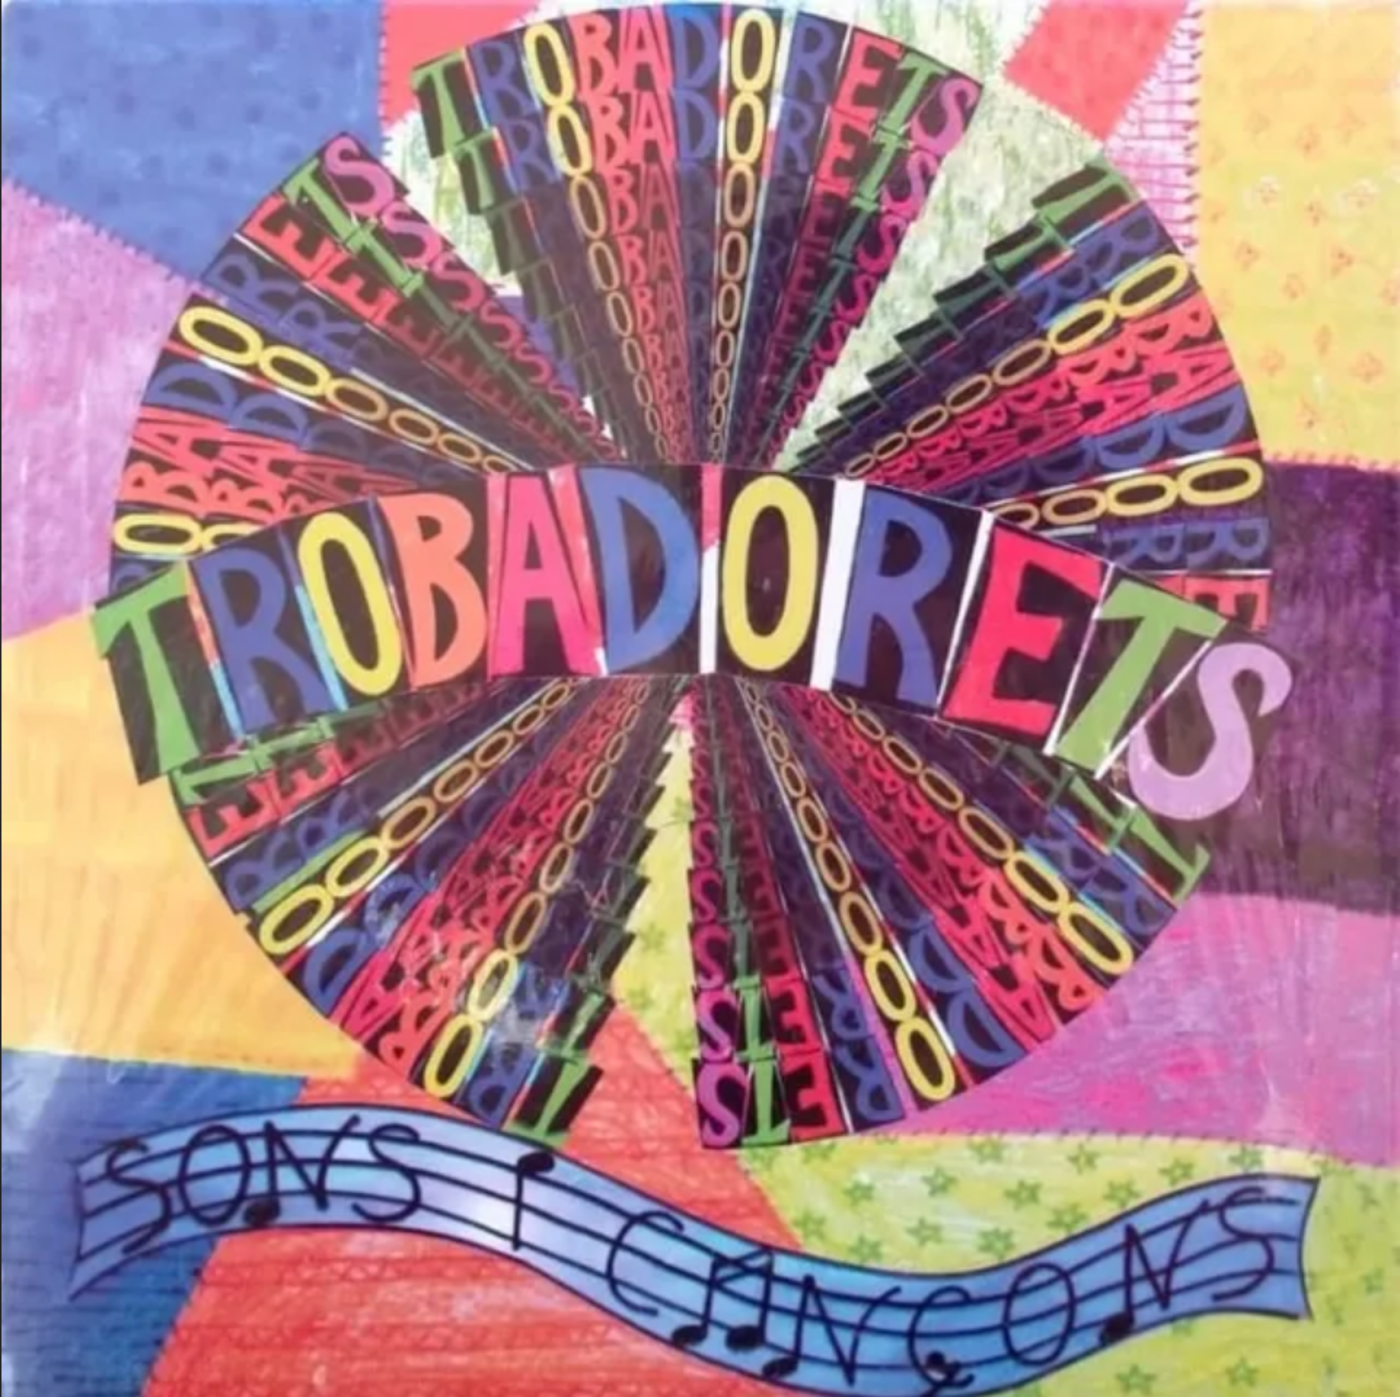 Trobadorets - Sons i cançons | musica en valencià